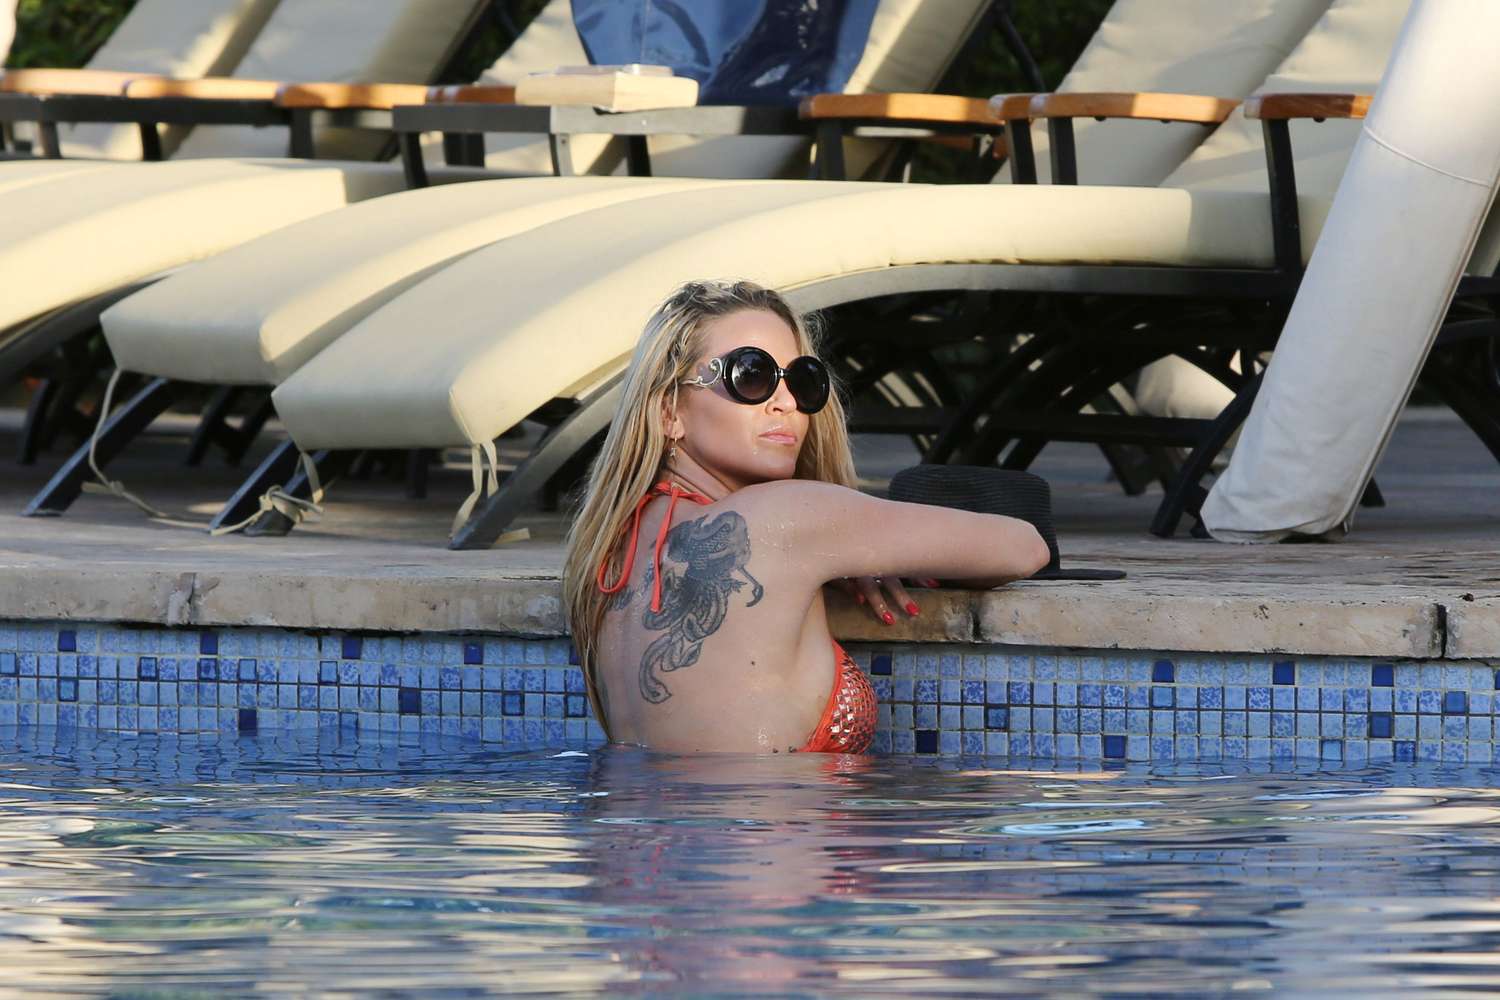 Sarah Harding in Bikini at a pool in Dubai. 